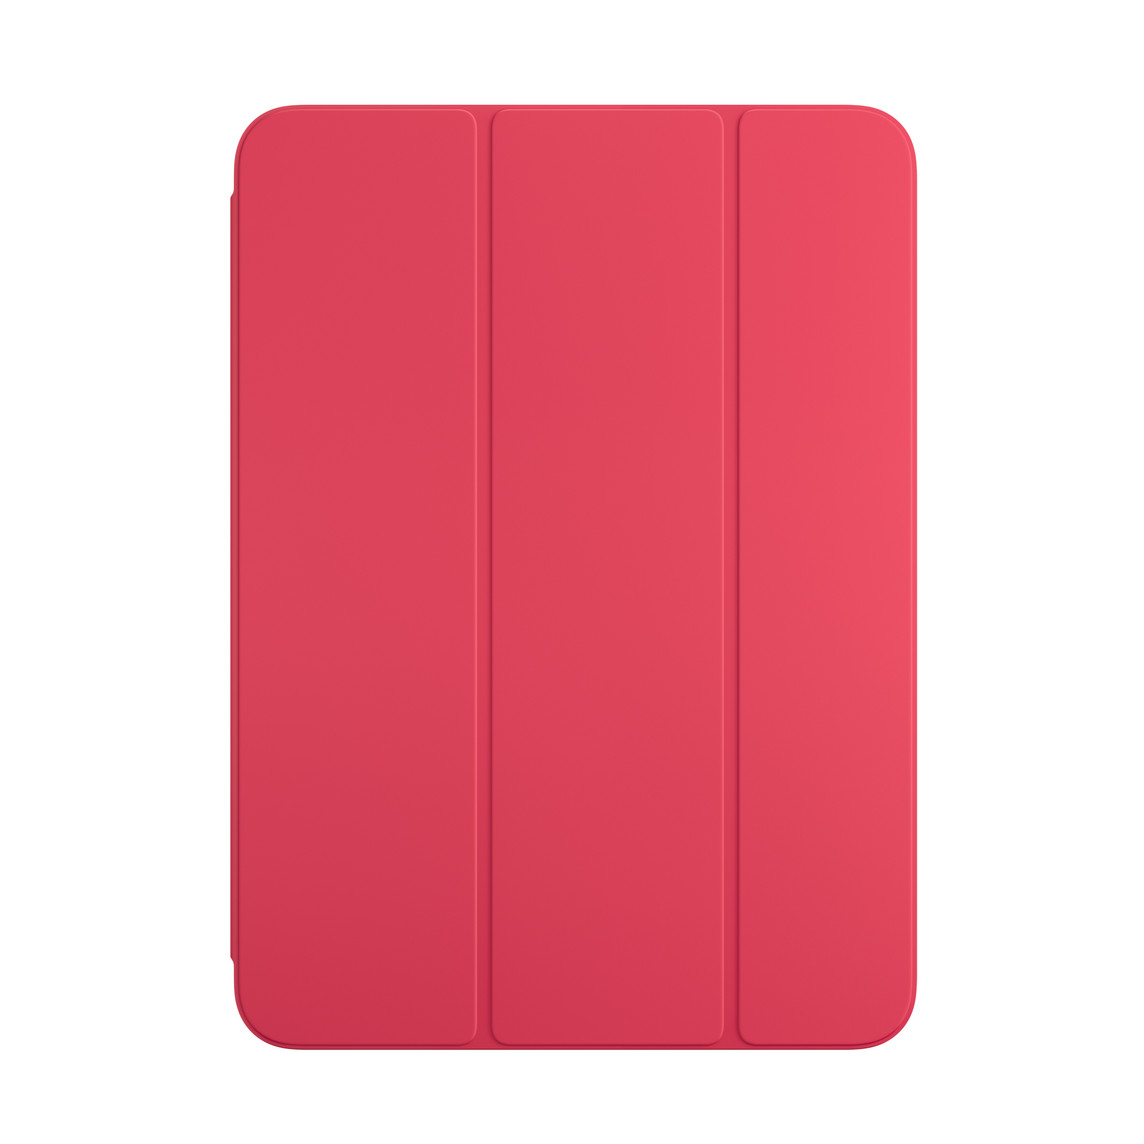 Vorderansicht des Smart Folio für iPad in Wassermelone